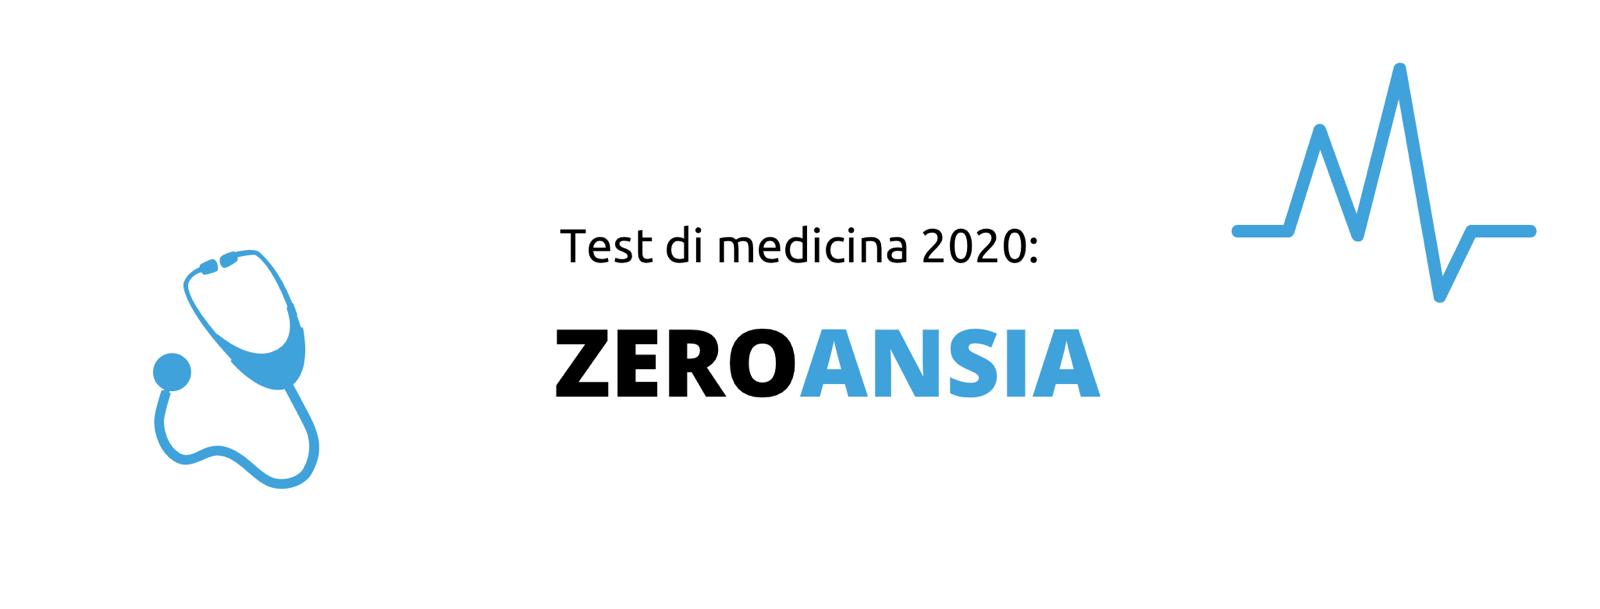 Test di medicina 2020: ZEROANSIA 1